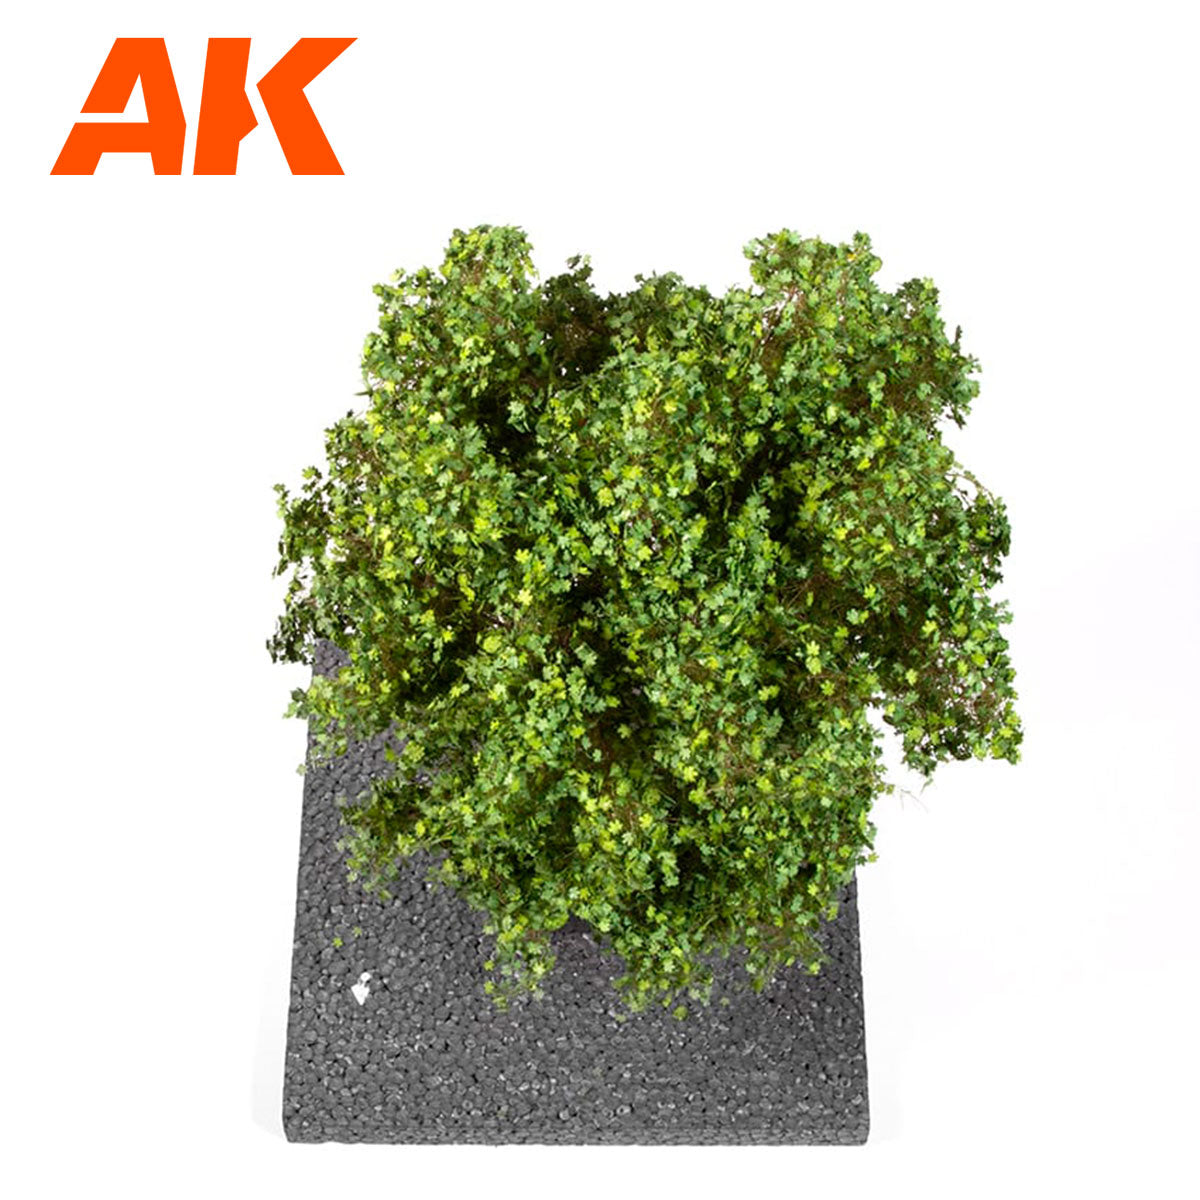 AK8188 - Pine Tree 1/35